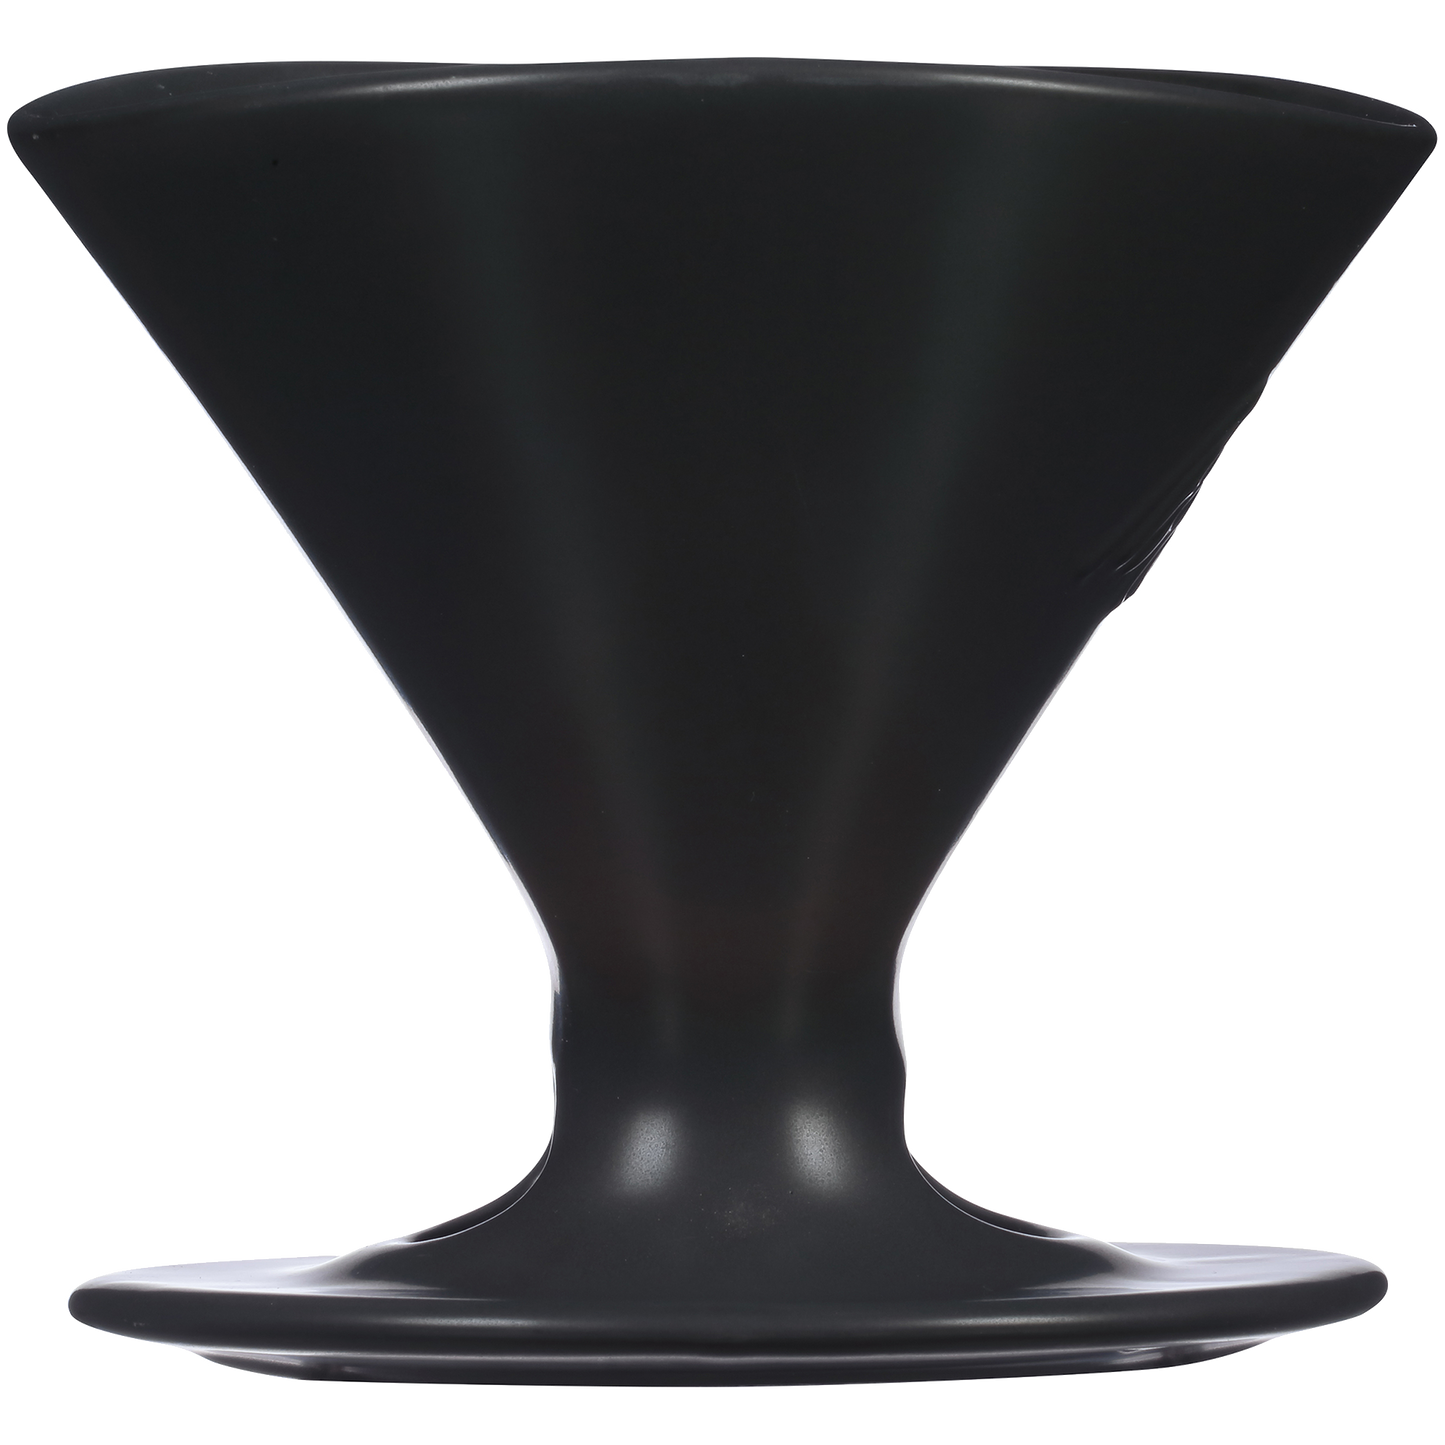 Signature Series 1-Cup Pour-Over Coffeemaker - Porcelain, Matte Black